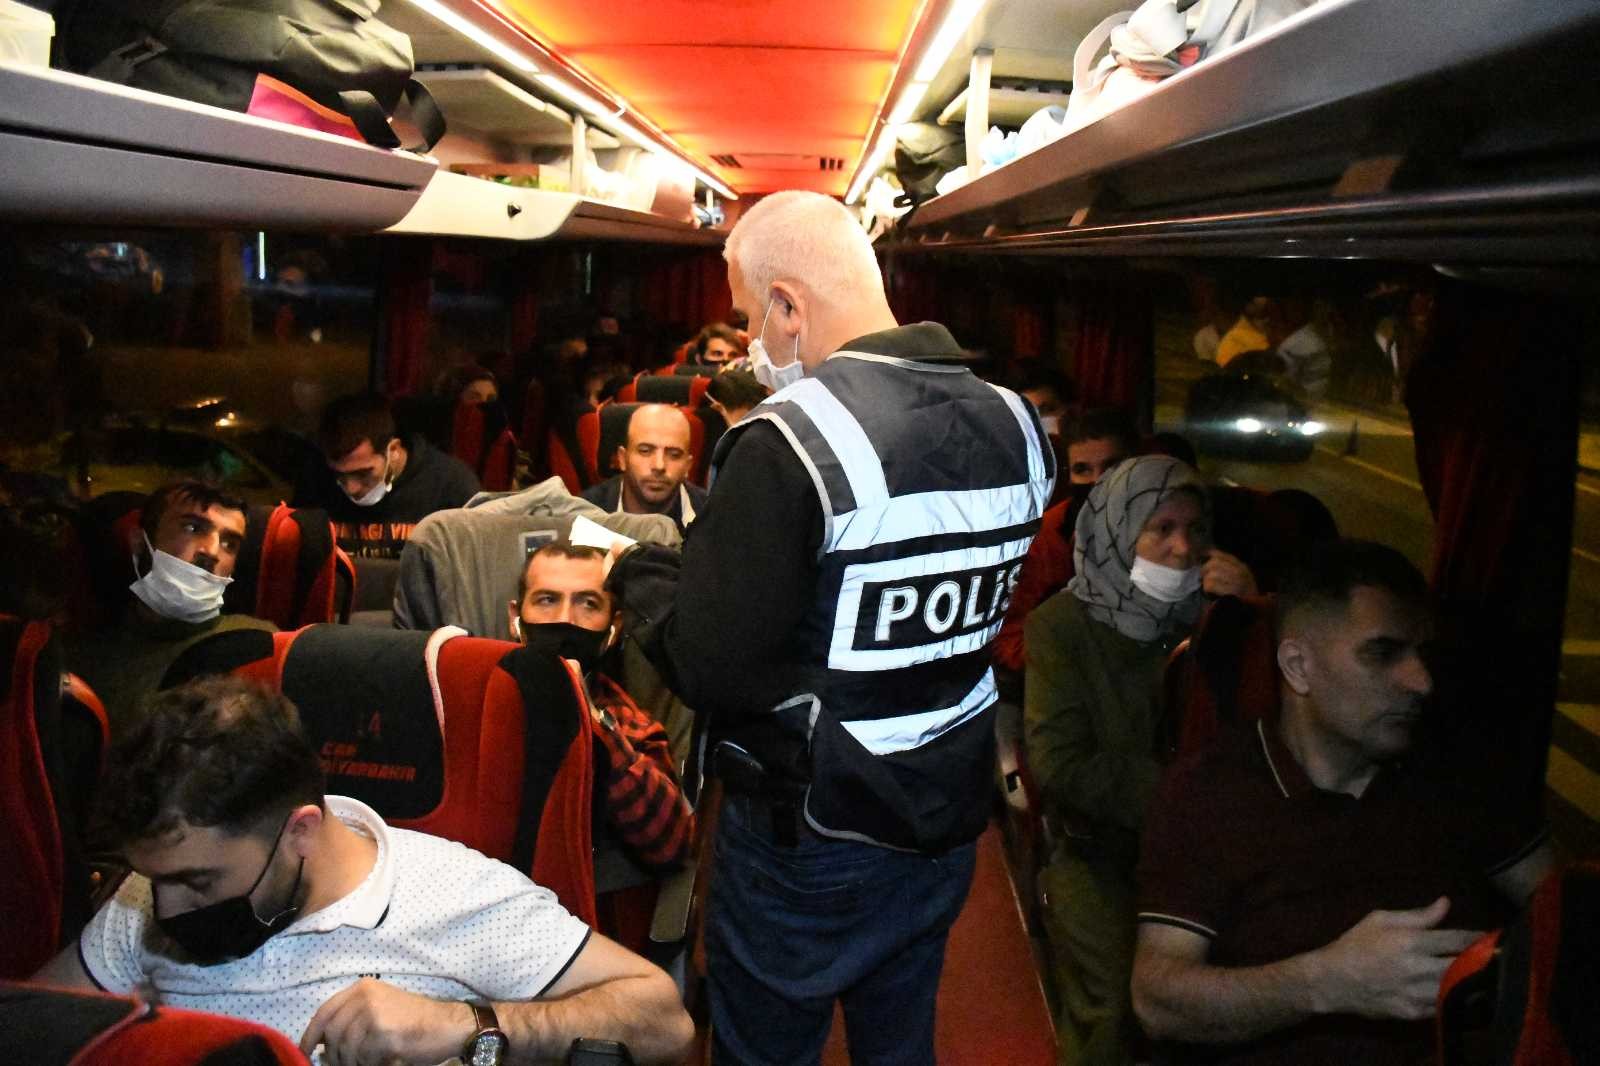 Aksaray’da yolcu otobüslerine yönelik denetimler sürüyor #aksaray